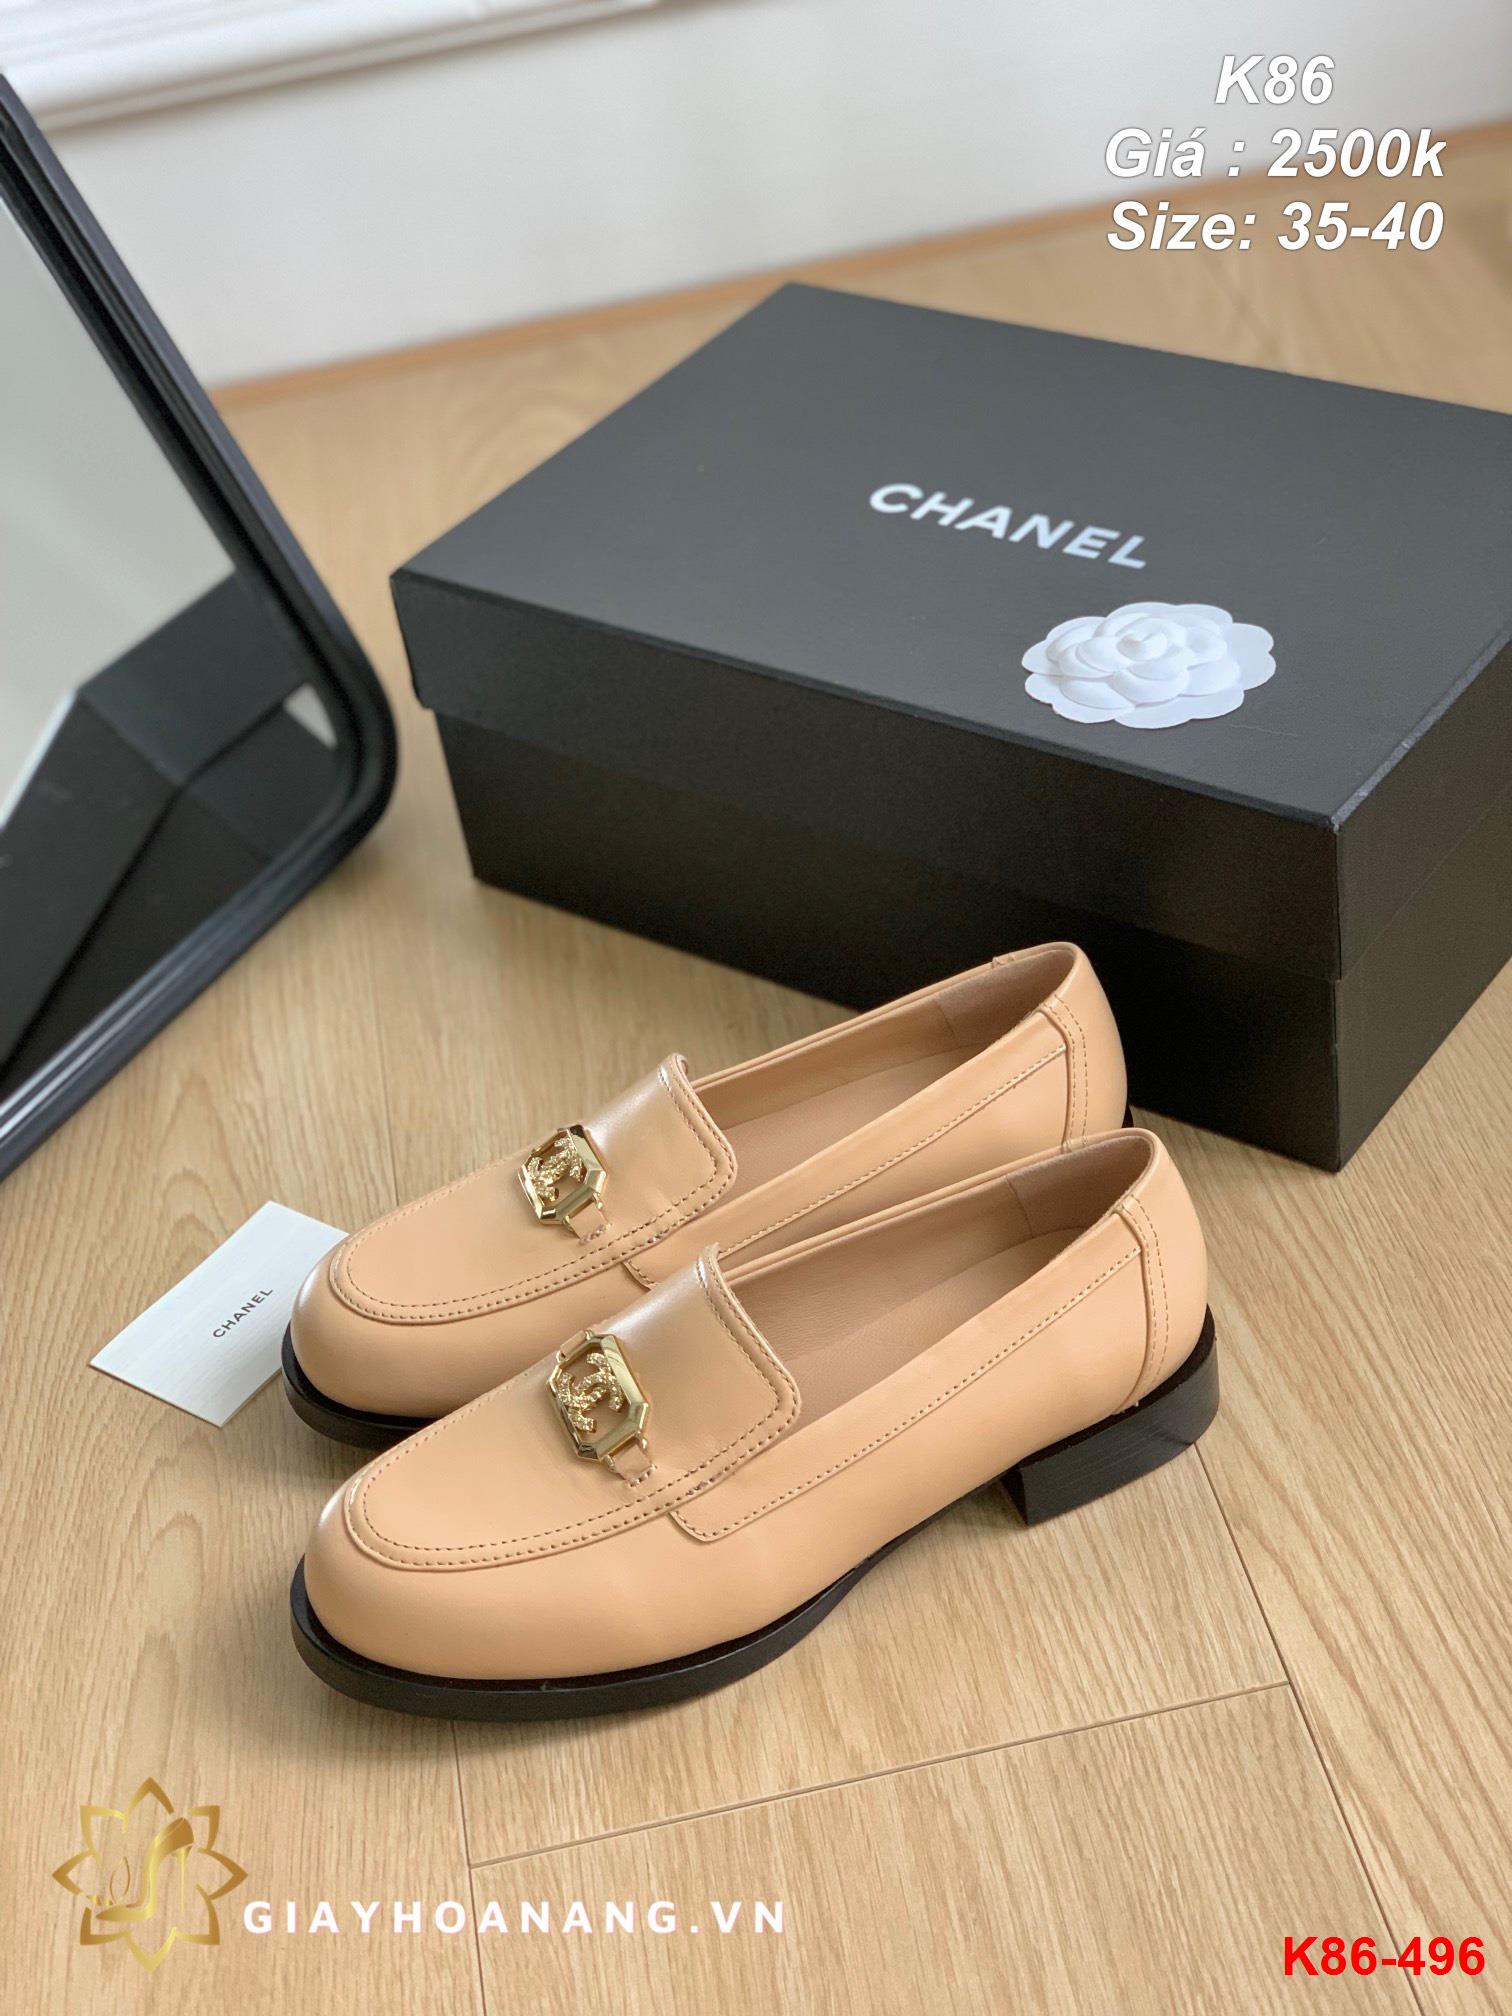 K86-496 Chanel giày lười siêu cấp